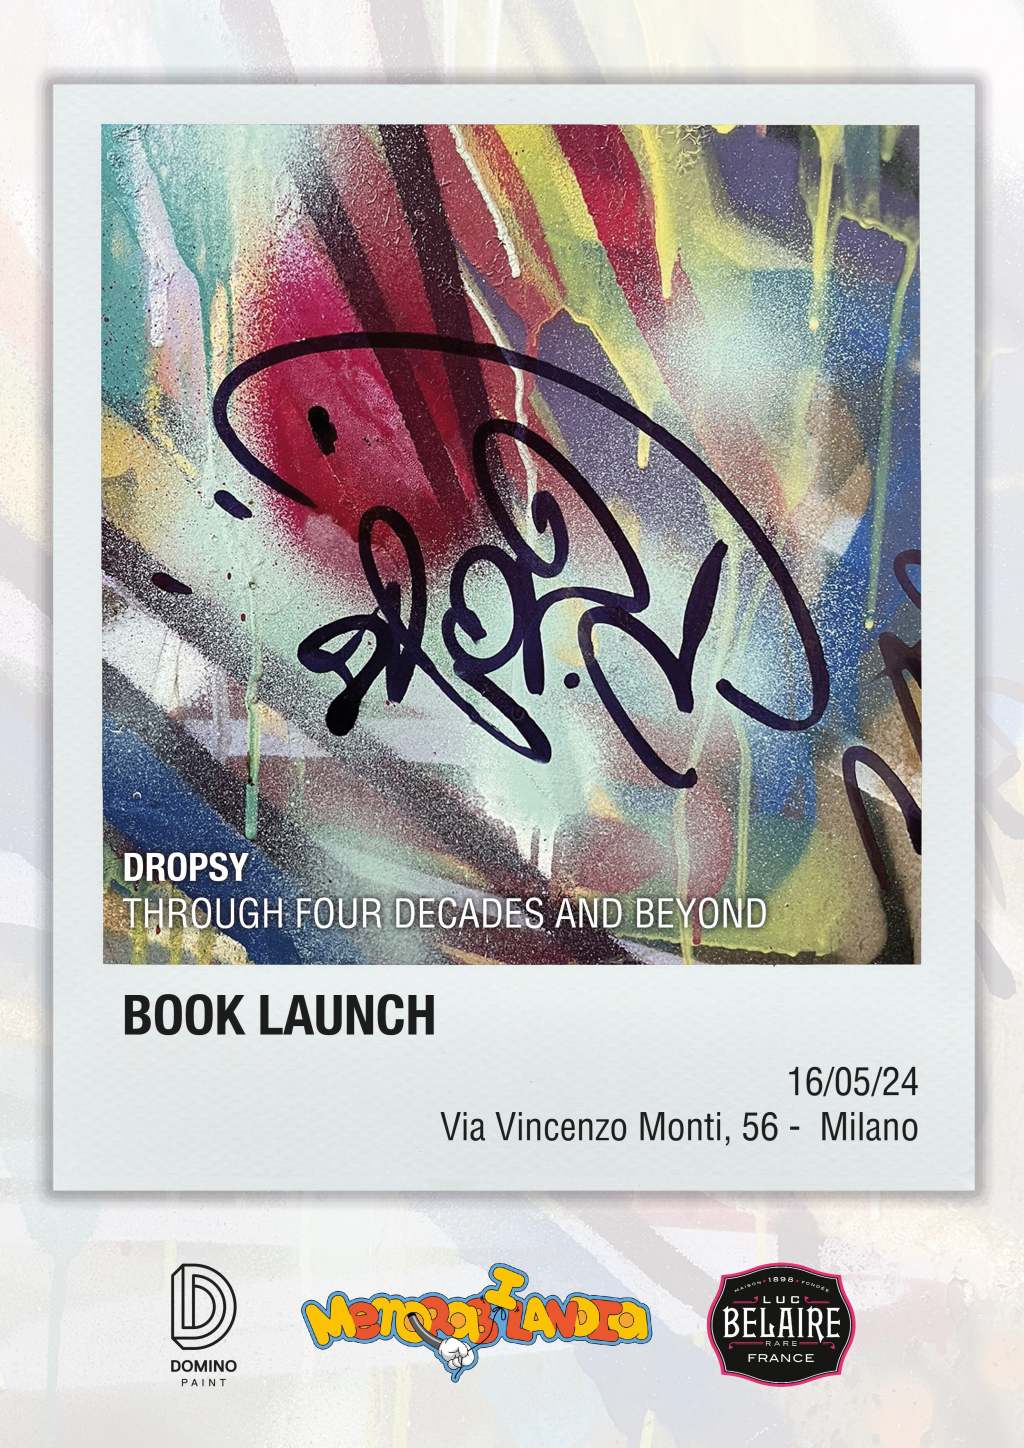 Dropsy, l’artista milanese pioniere dei graffiti e dell’urban culture, giovedì 16 maggio a MILANO presenta il suo libro